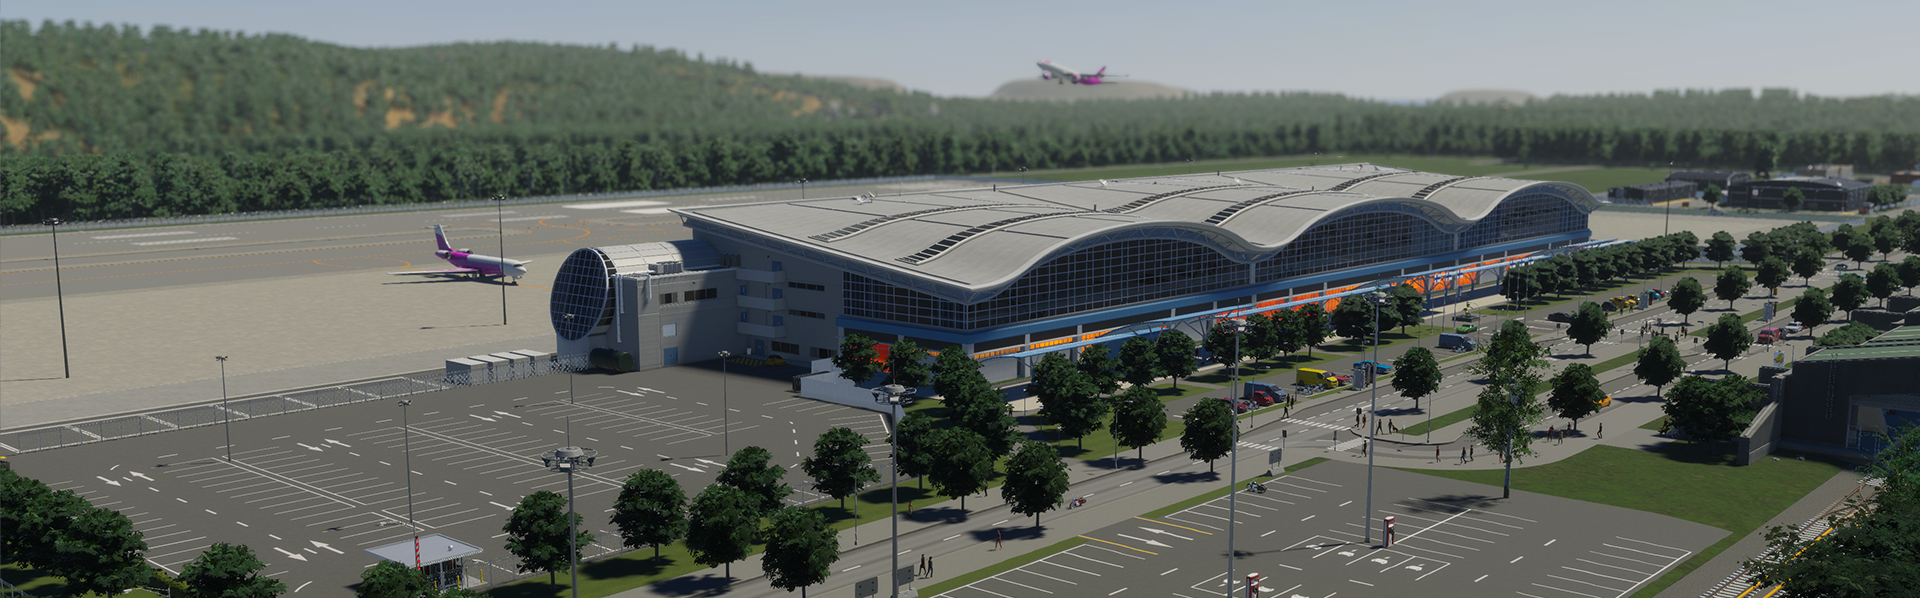 cities II airport